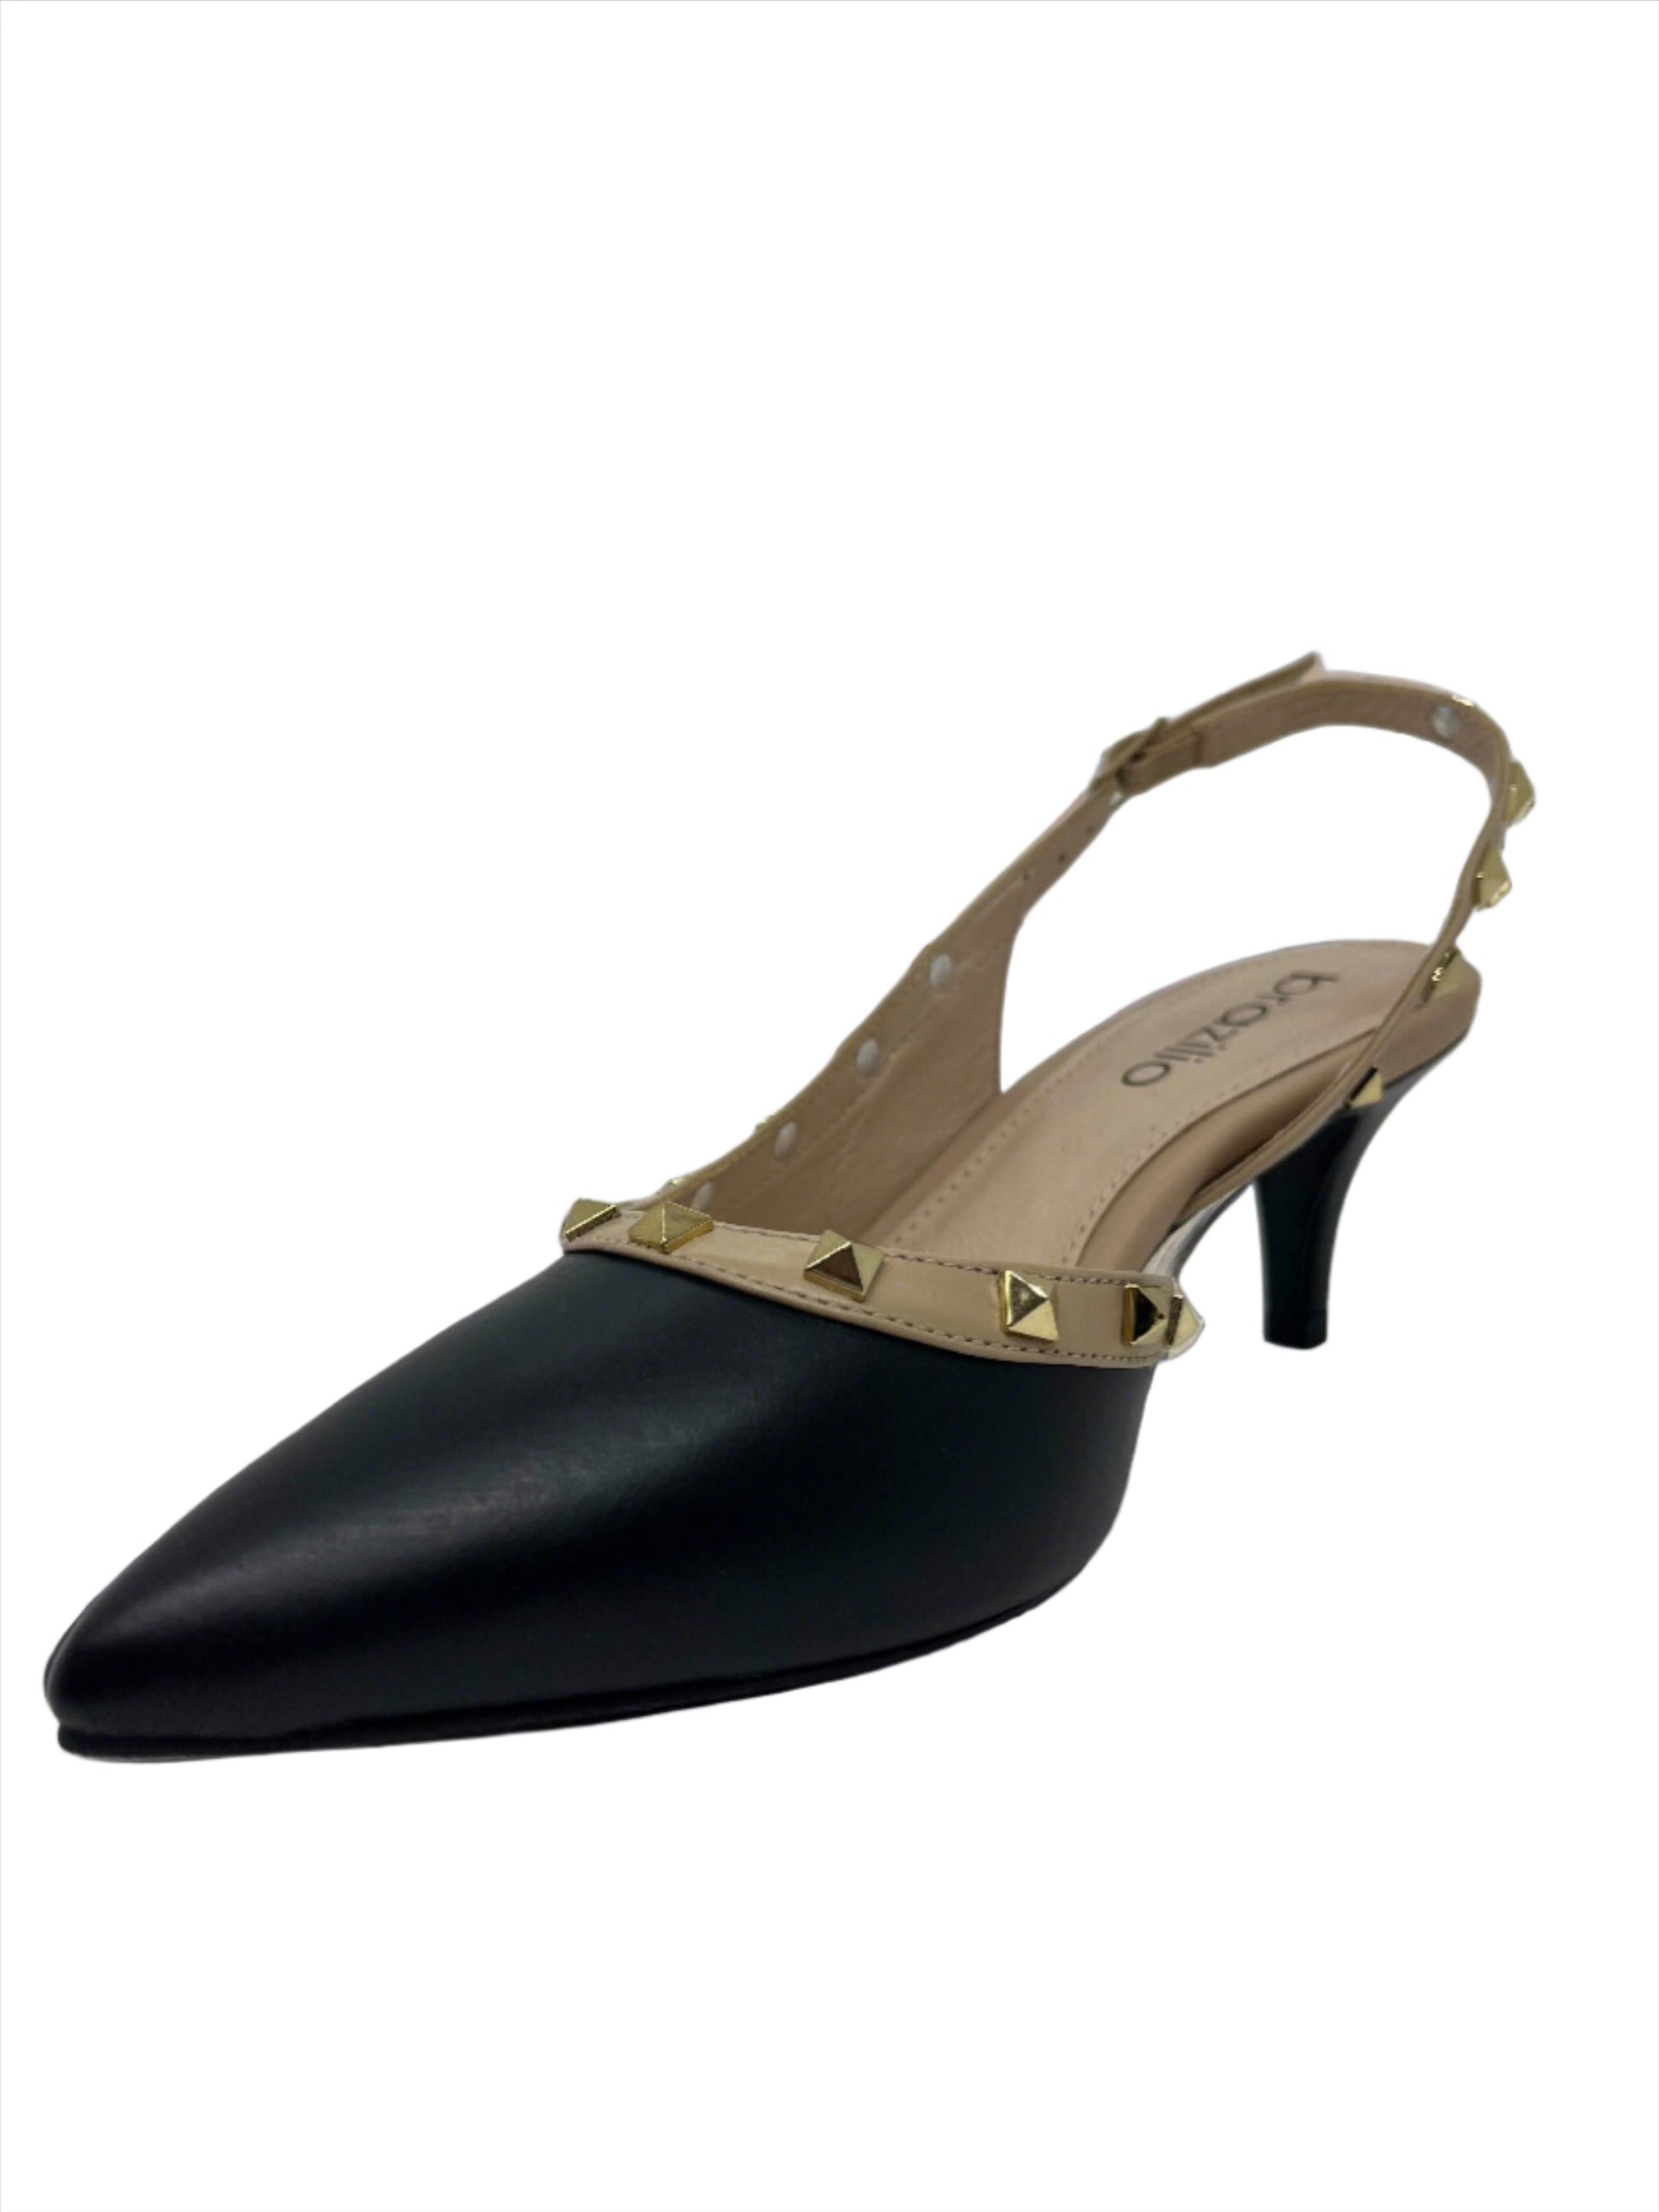 LINDY STRAPPY HEEL -  - 1300589, womens footwear - Stomp Shoes Darwin